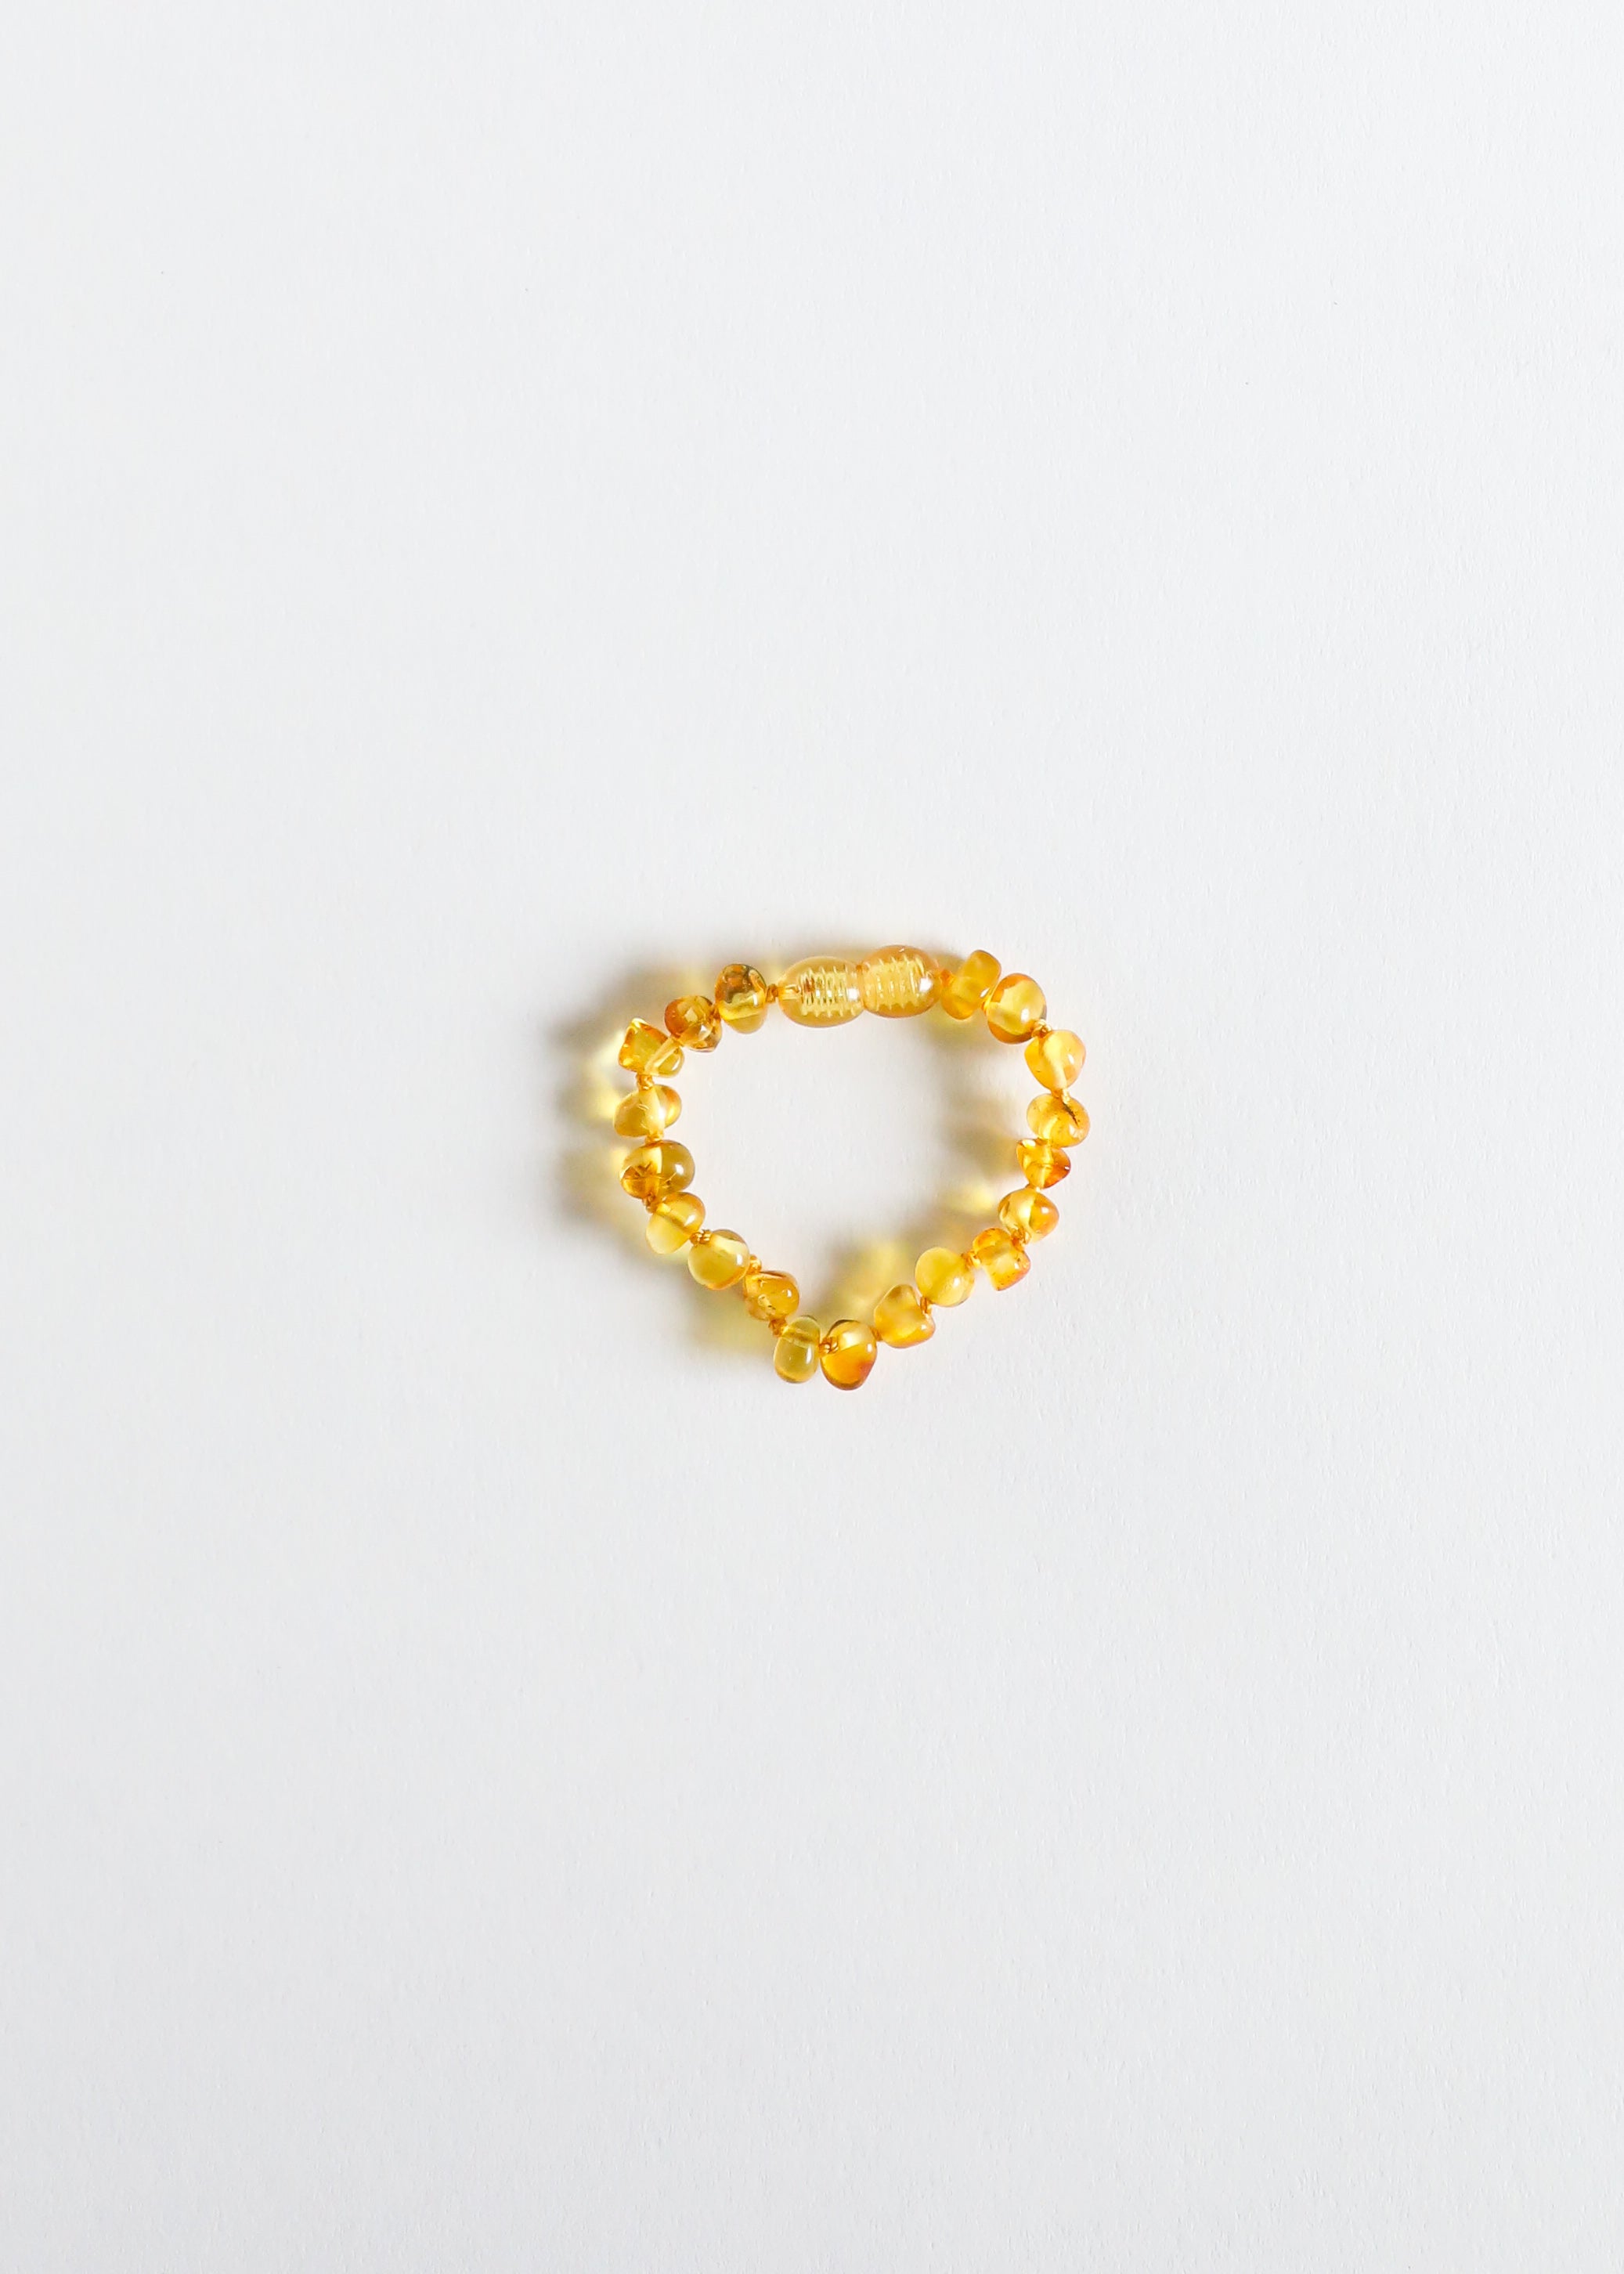 Polished Honey Baltic Amber || Anklet or Bracelet